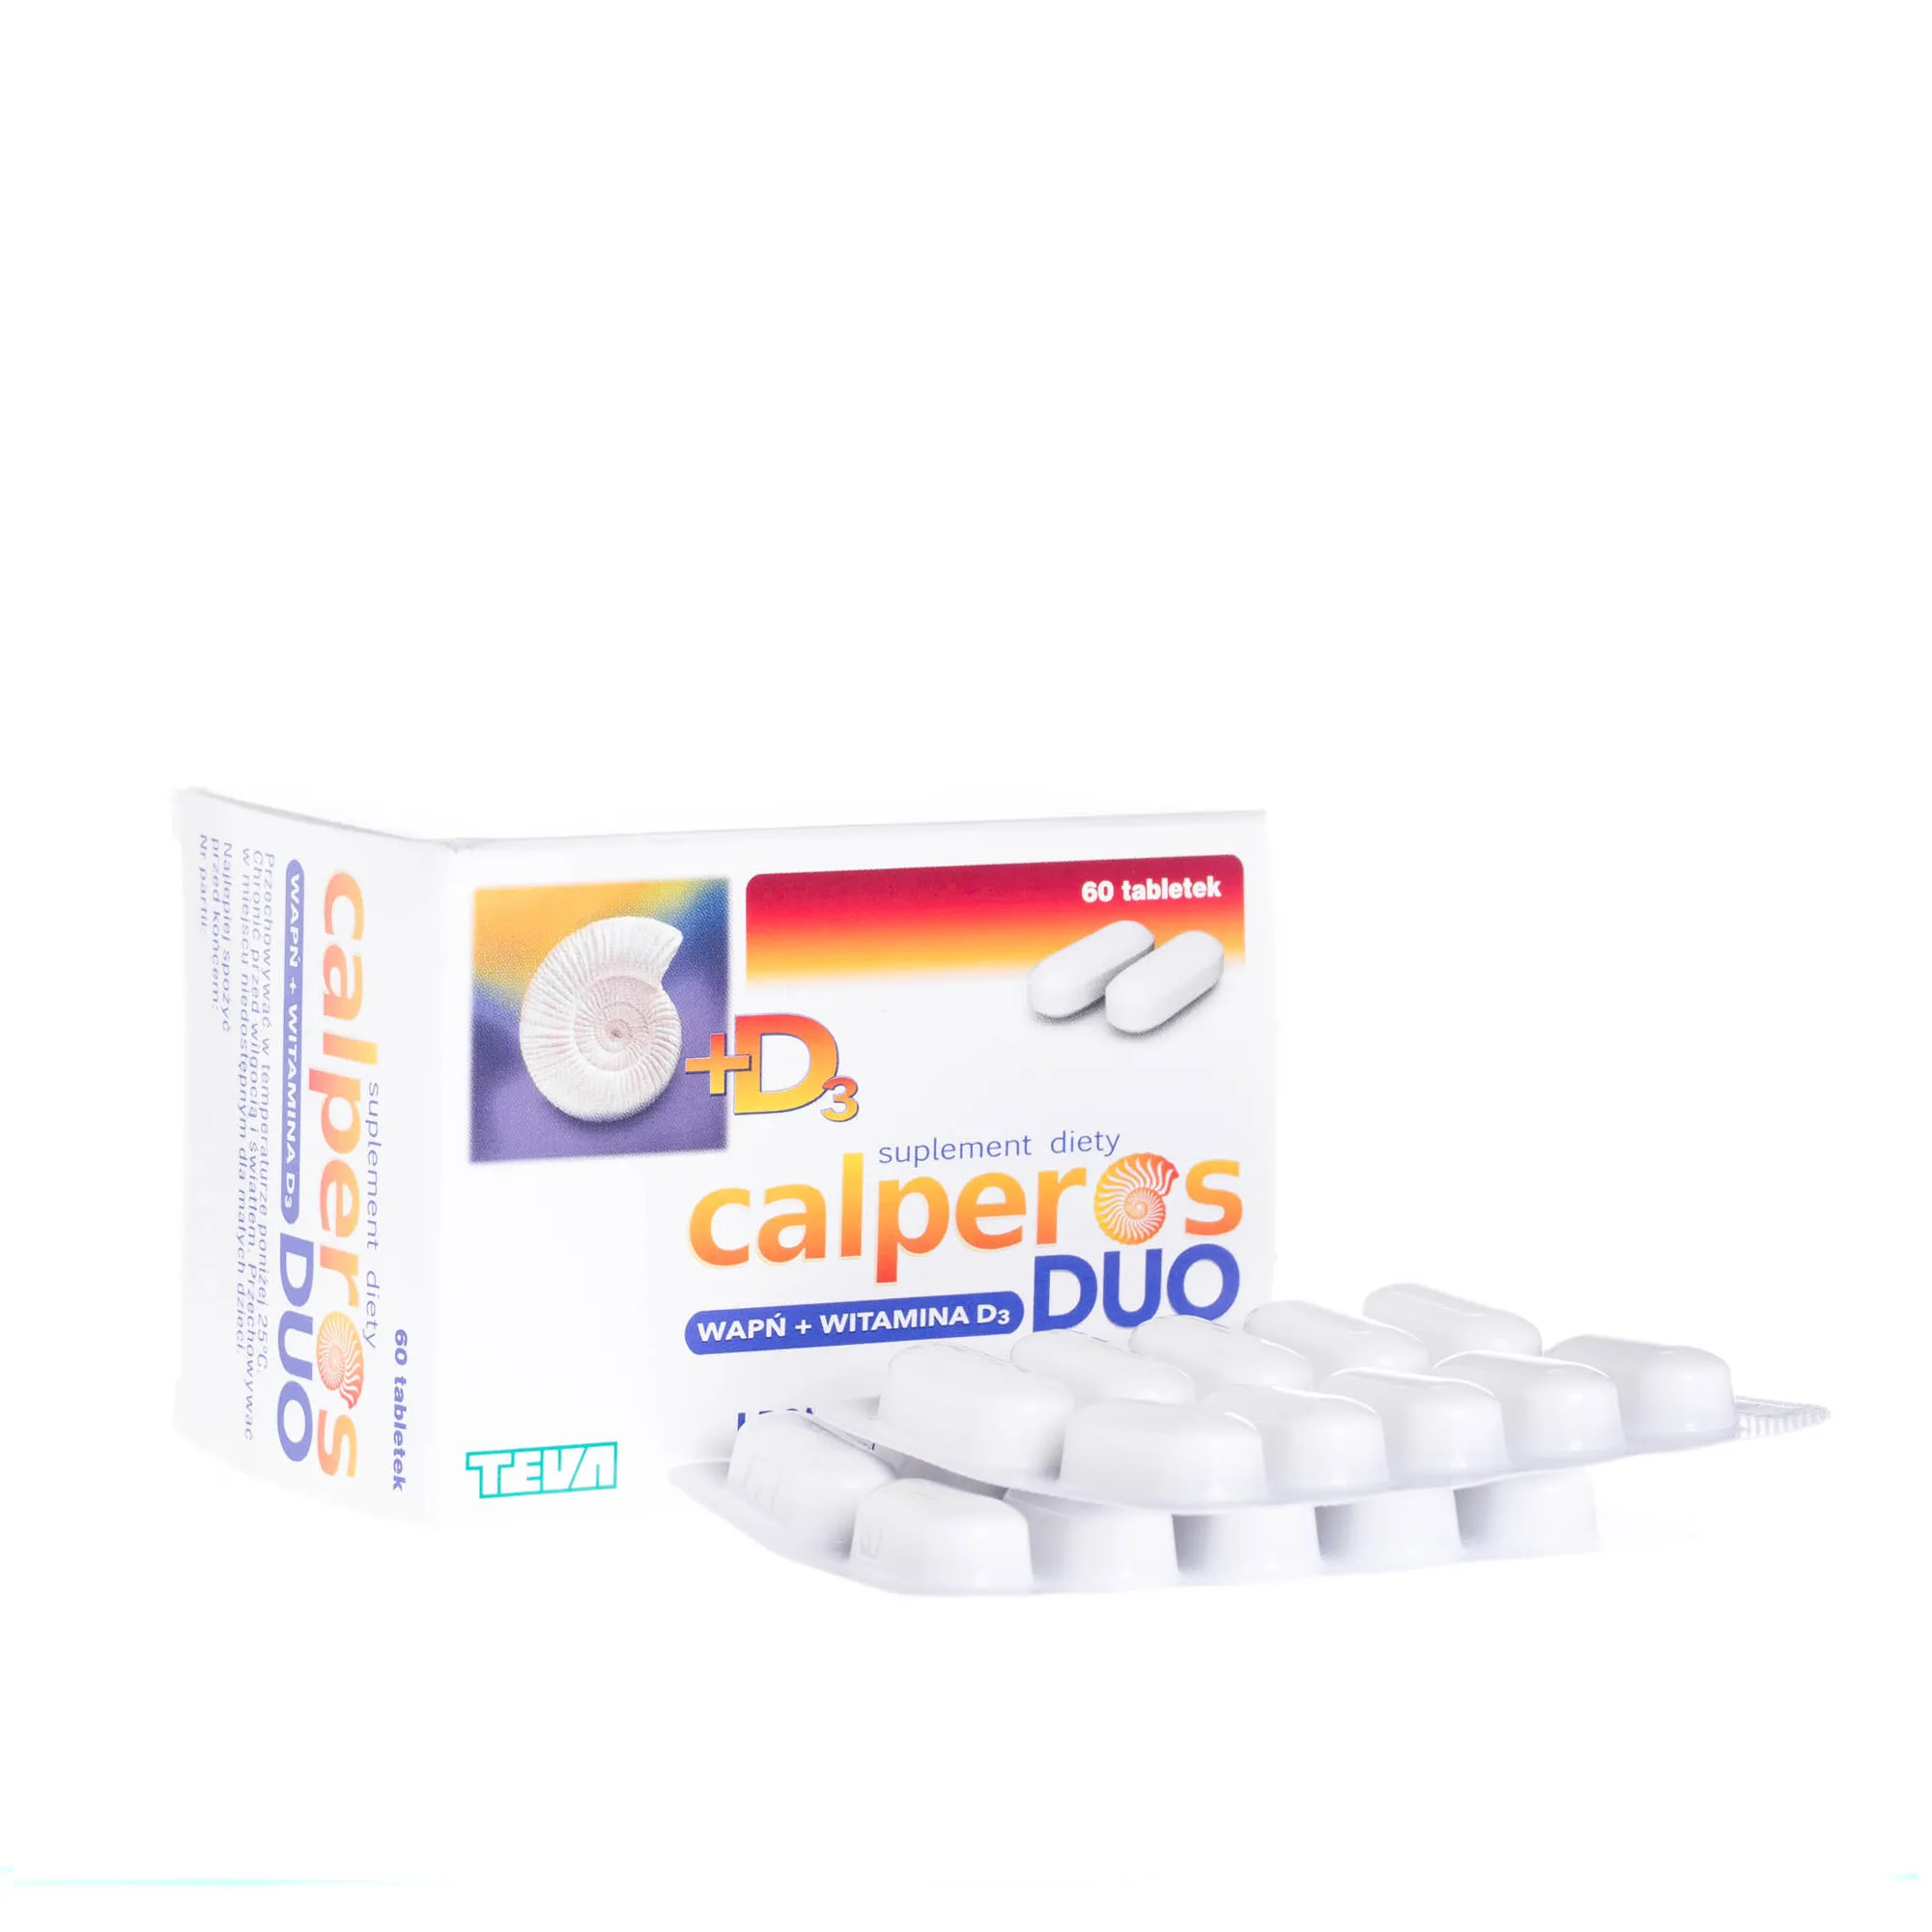 Calperos DUO wapń + witamina D3, 60 tabletek 